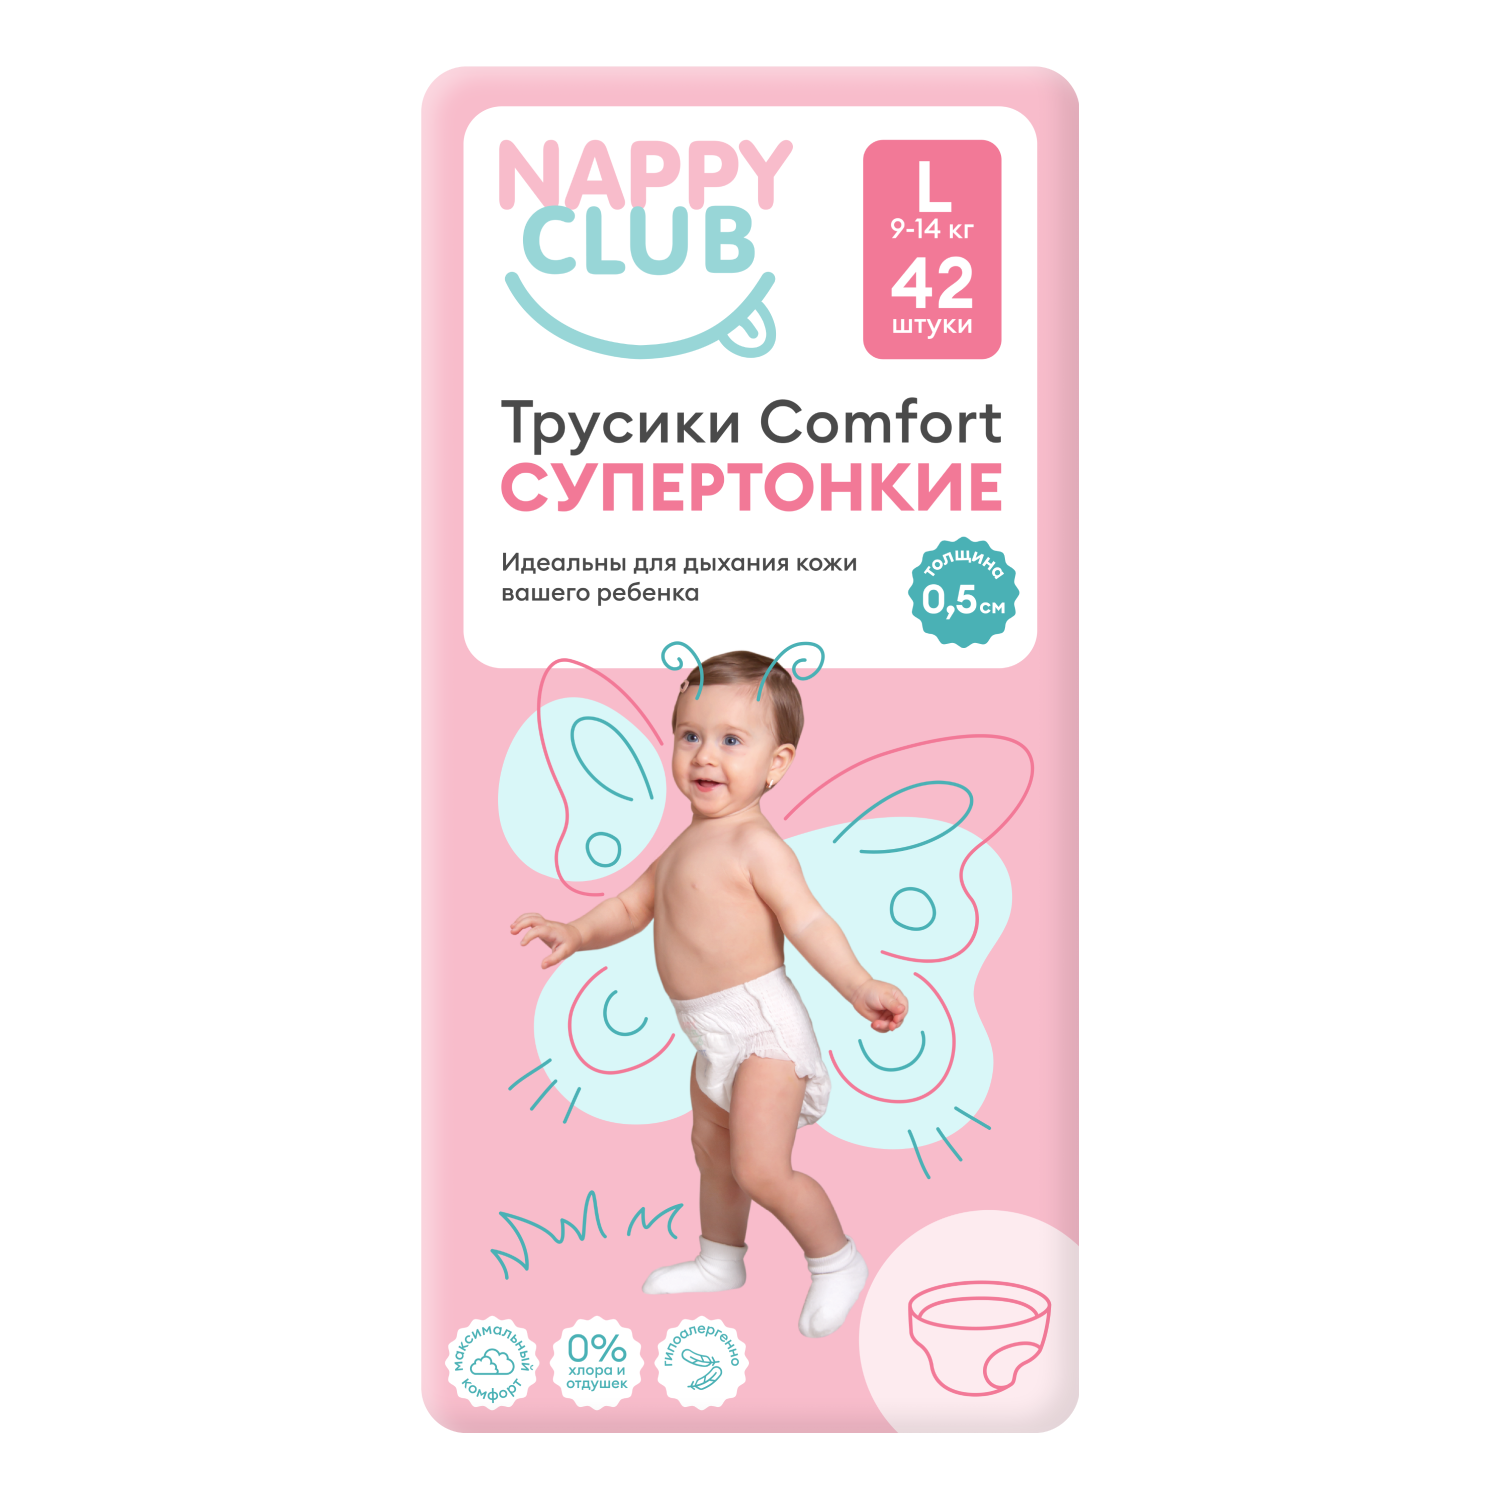 NappyClub трусики Comfort дневные супер-тонкие L (9-14 кг) 42 шт. nappyclub трусики premium дневные супер тонкие xl 12 20 кг 38 шт